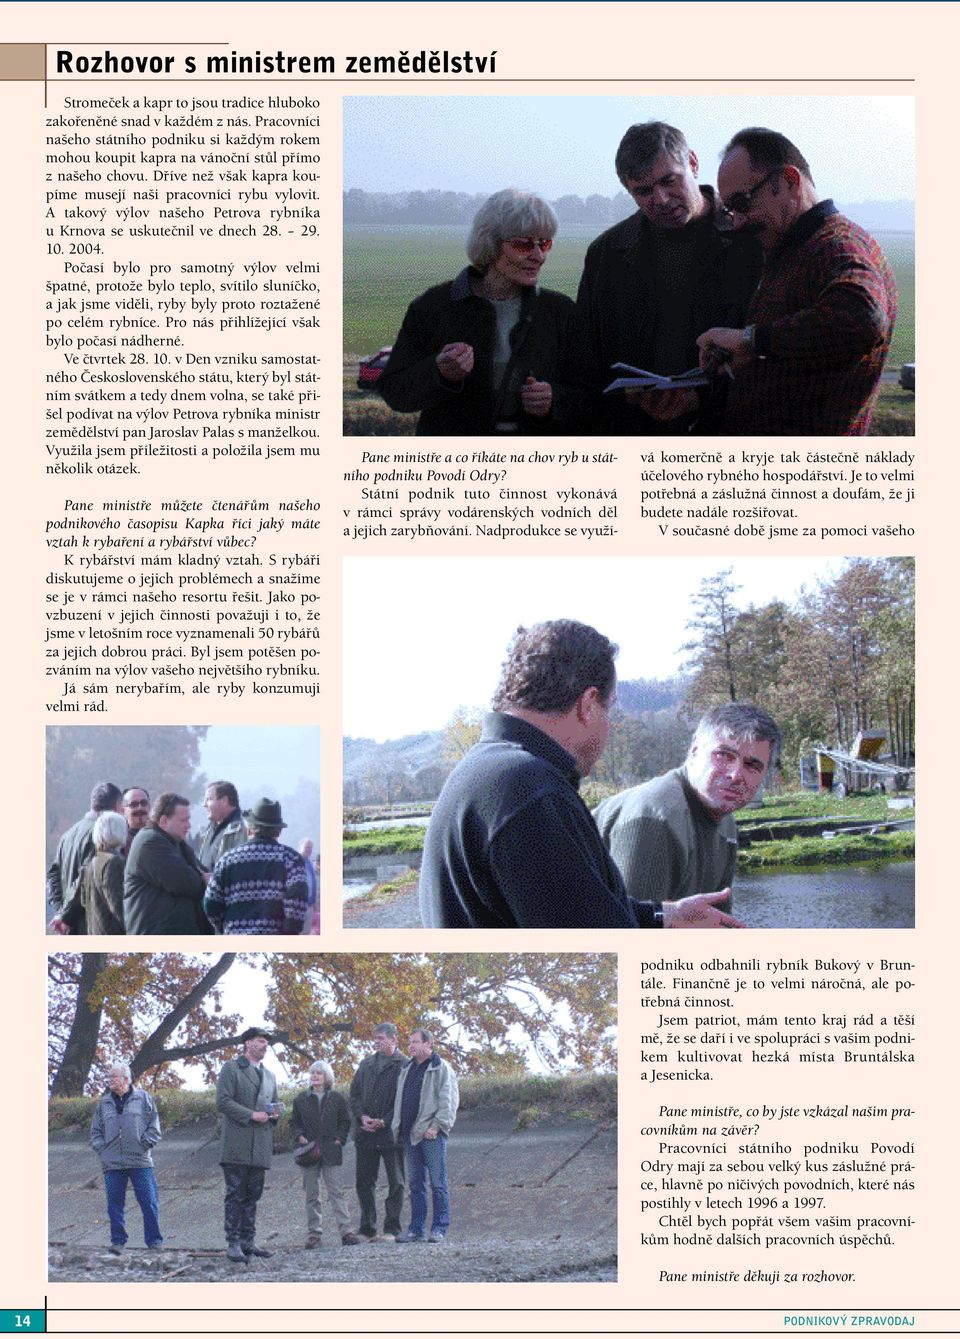 A takový výlov našeho Petrova rybníka u Krnova se uskutečnil ve dnech 28. 29. 10. 2004.